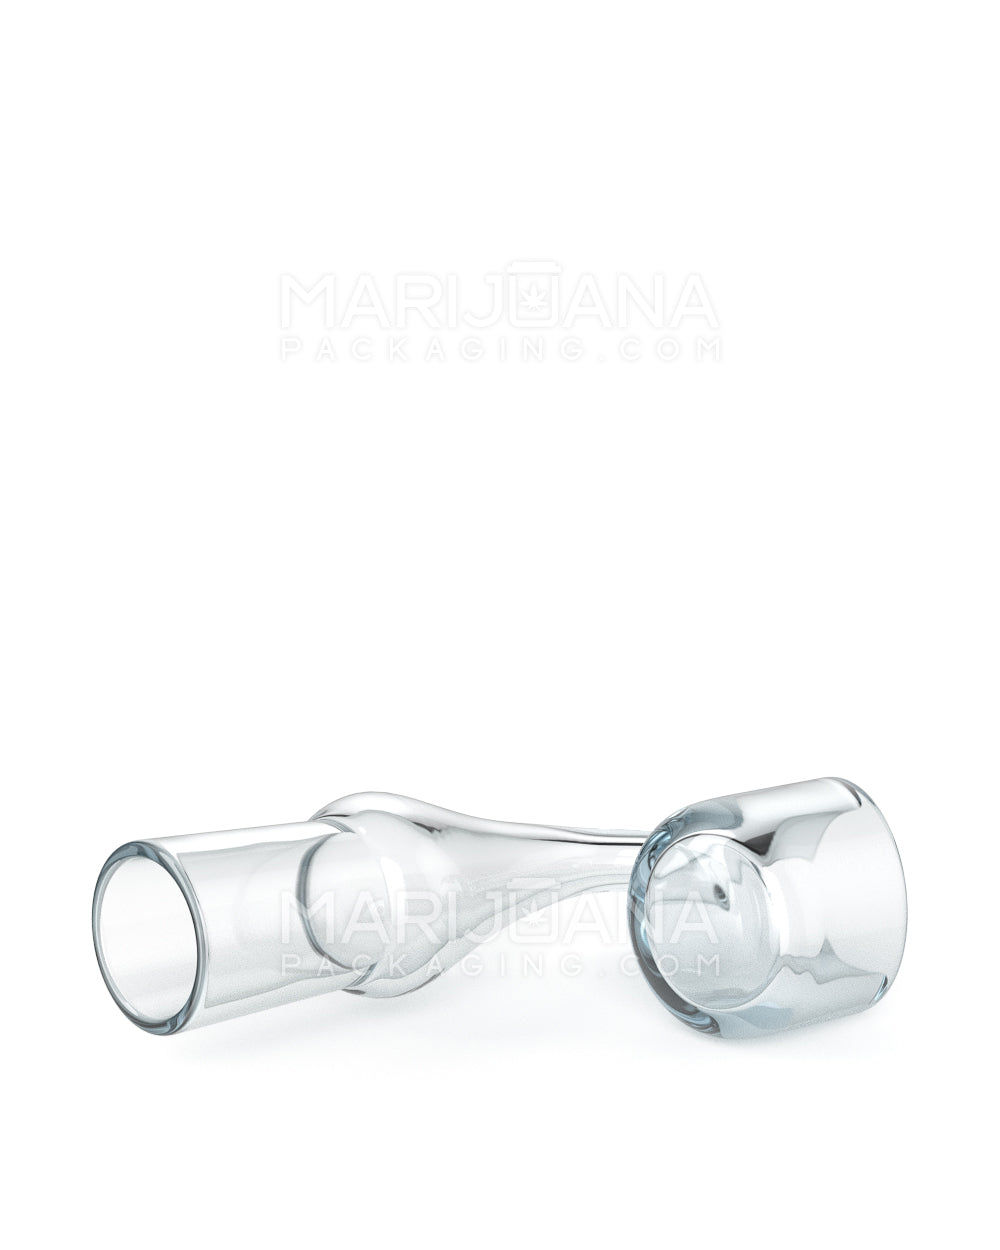 USA Glass | Thick 4mm Quartz Banger Nail | 14mm - 90 Degree - Female - 5